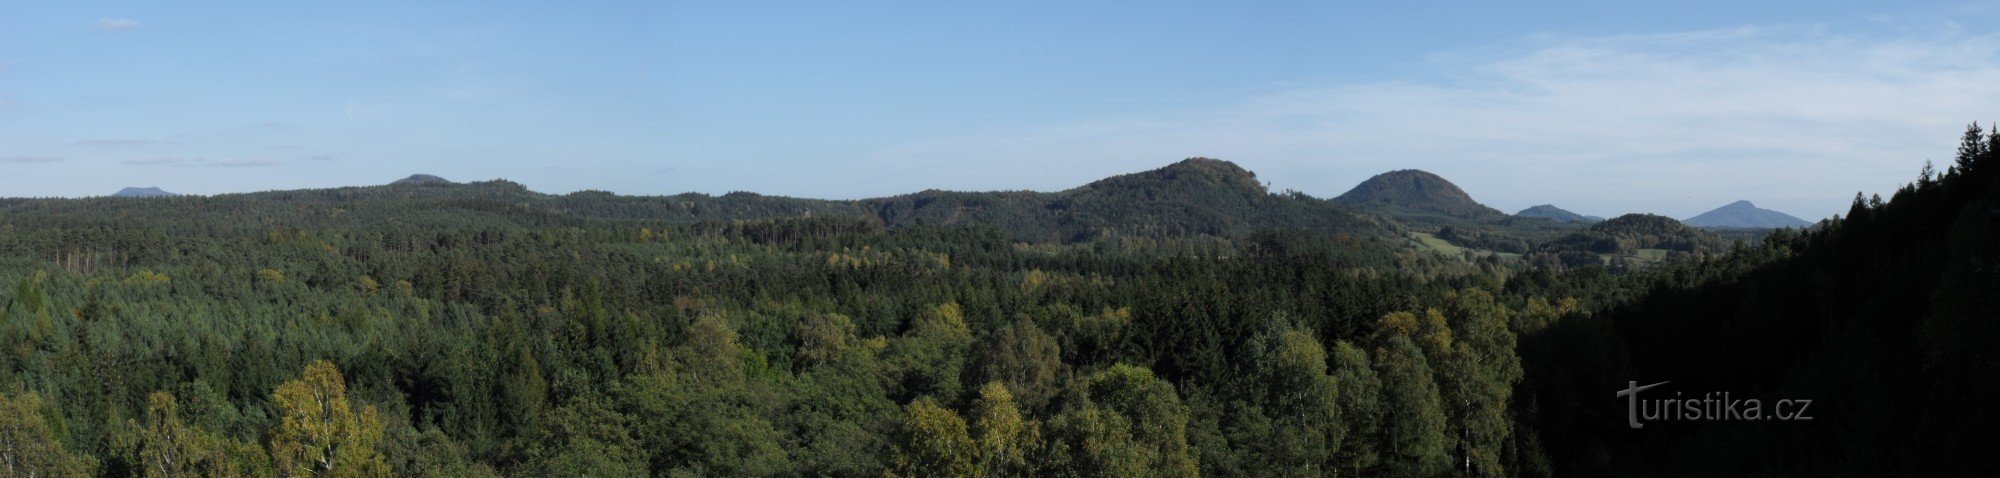 Panorama from Jelení skop